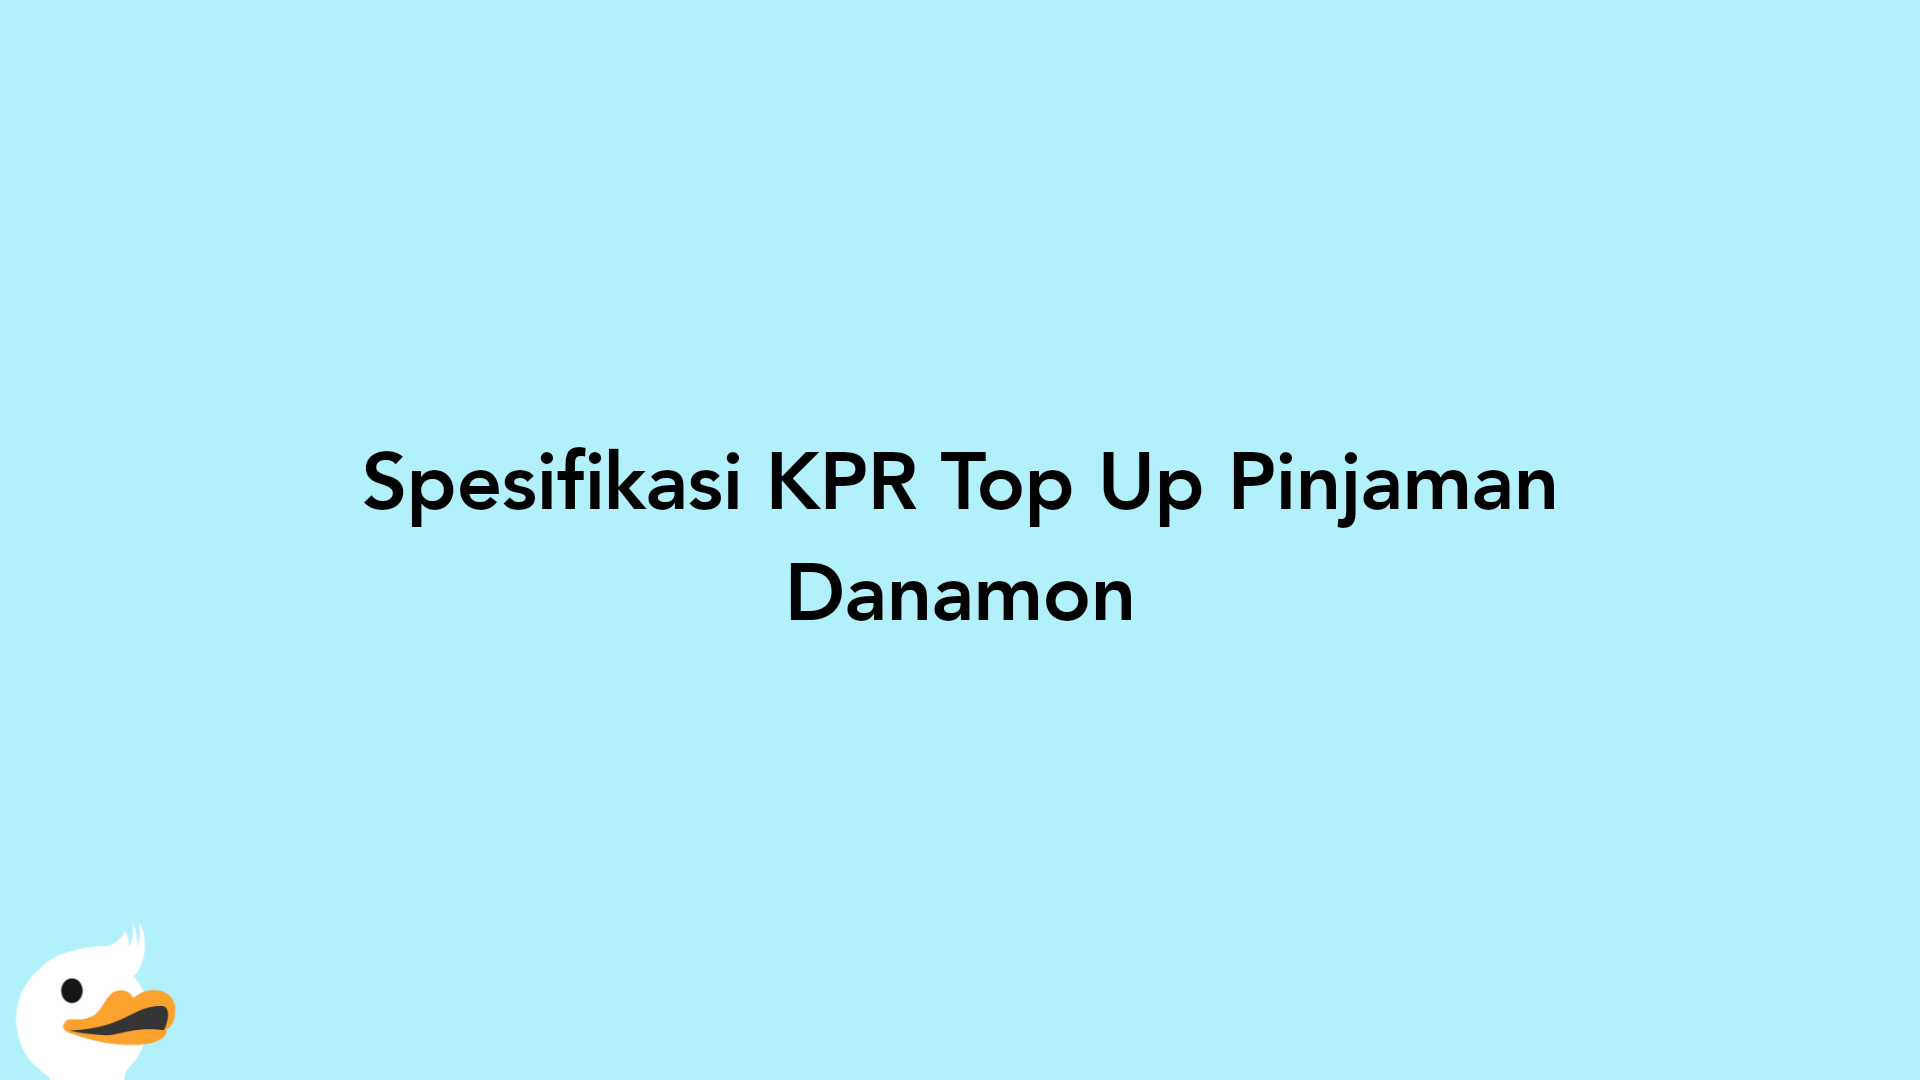 Spesifikasi KPR Top Up Pinjaman Danamon